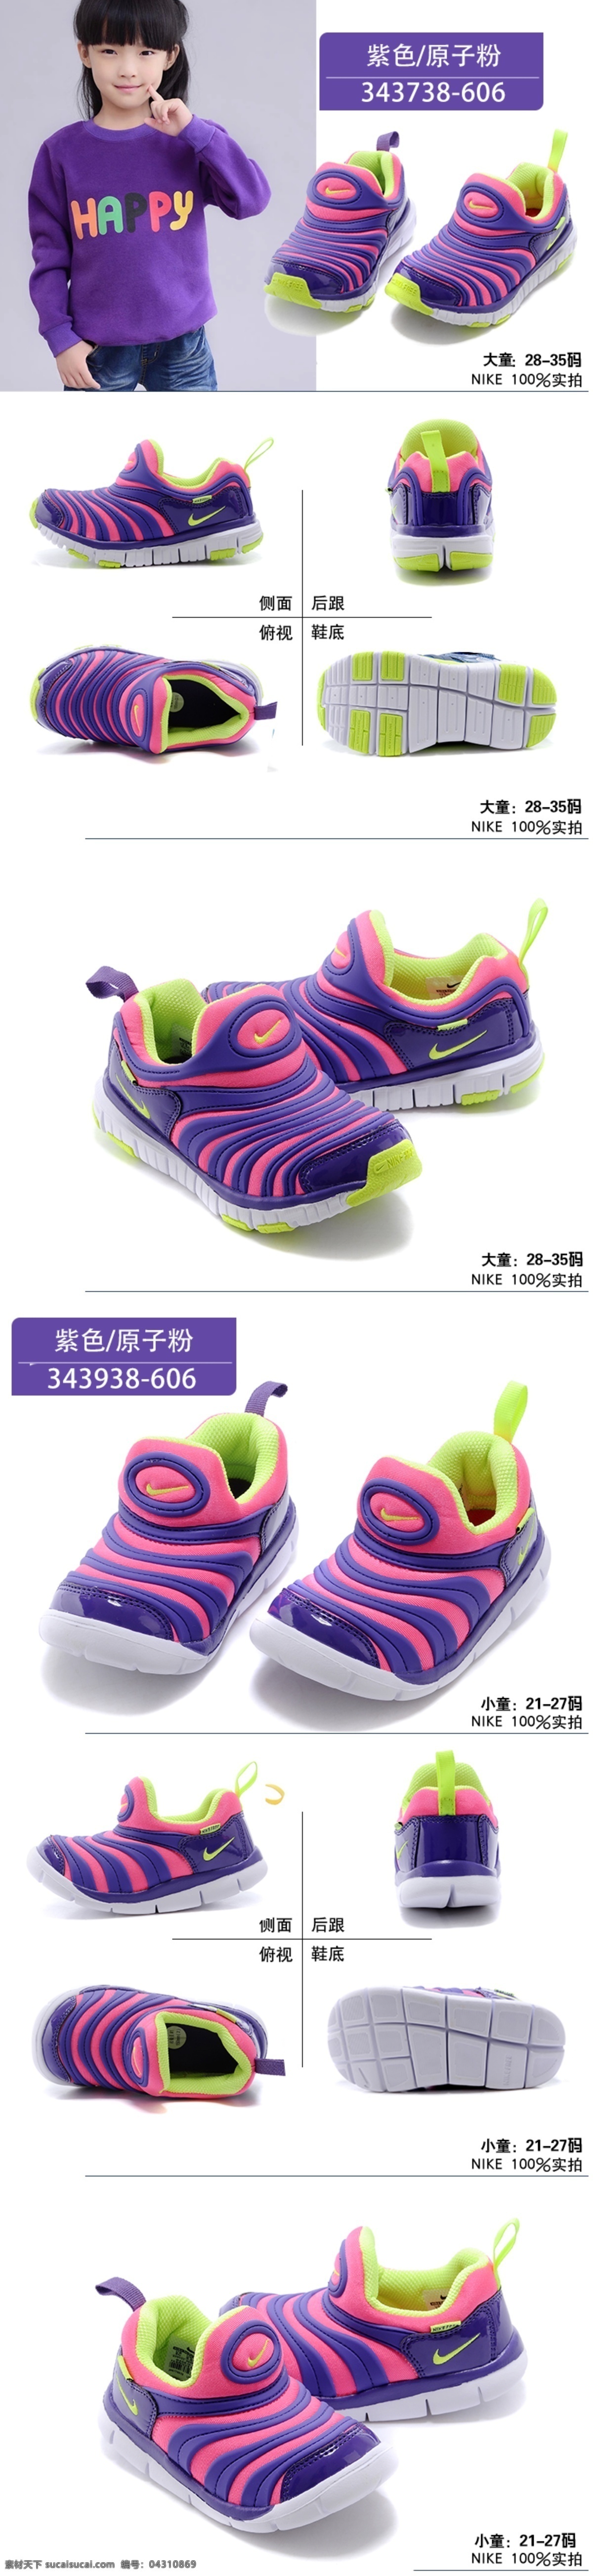 nike 毛毛虫 童鞋 描述 宝贝描述 详情页面 紫色 童鞋描述 童鞋宝贝